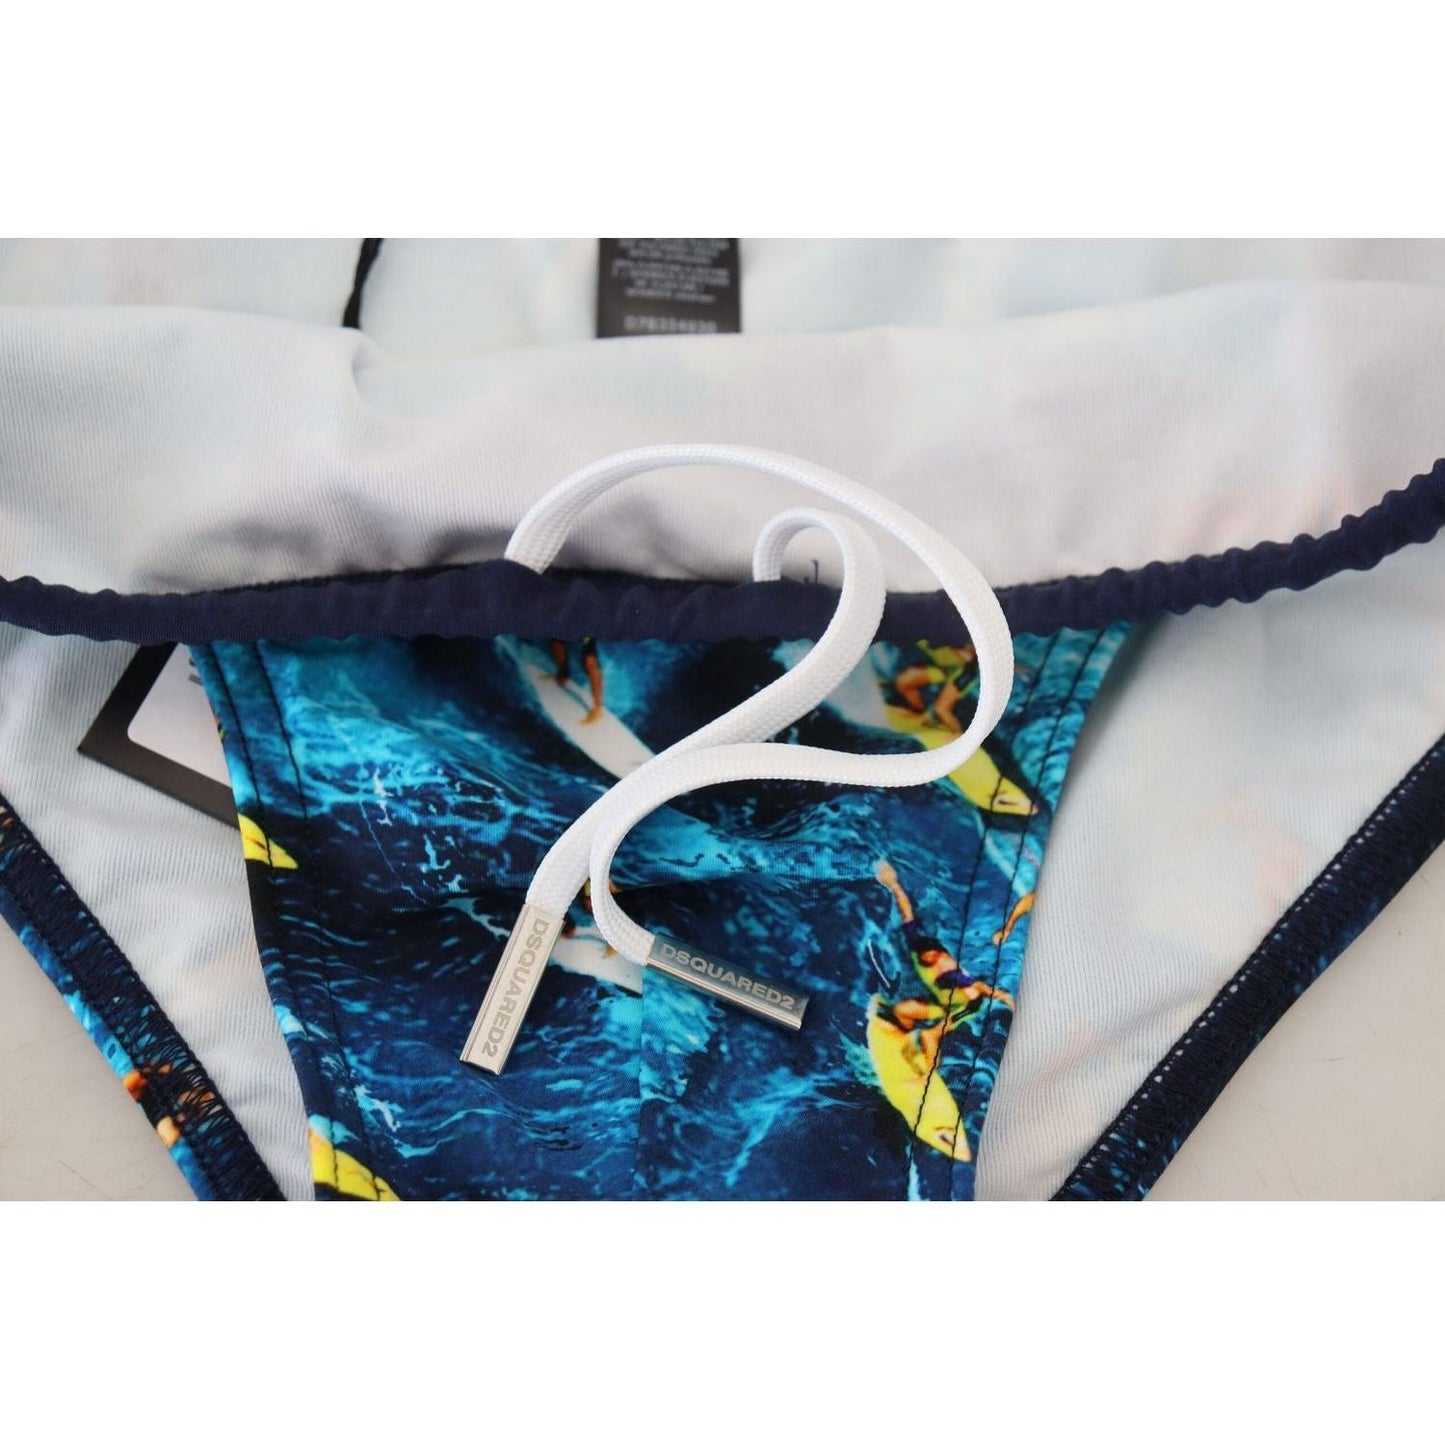 Dsquared² Exclusive Multicolor Graphic Swim Briefs multicolor-graphic-print-men-swim-brief-swimwear IMG_5977-scaled-66ec2881-0ea.jpg